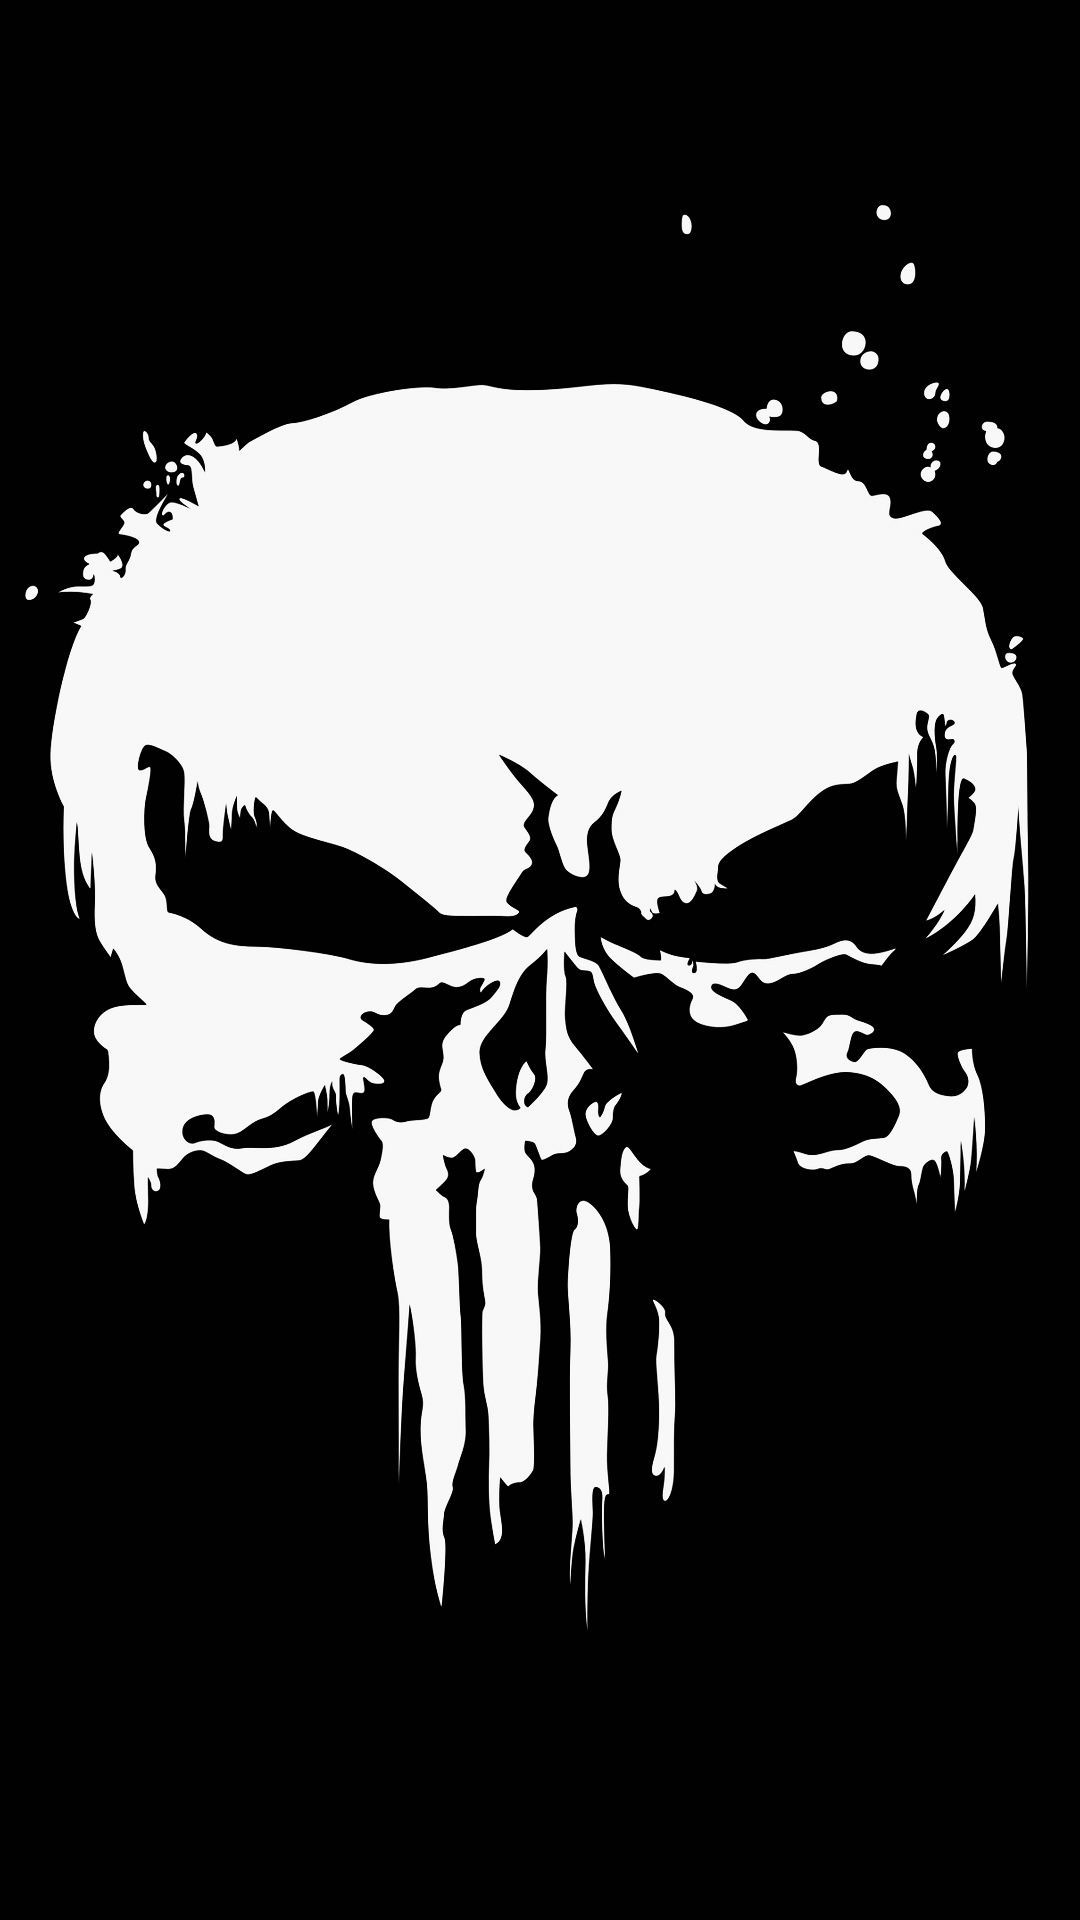 The Punisher logo en 2020. Logo de punisher, Fondo de búho, Fondos de comic